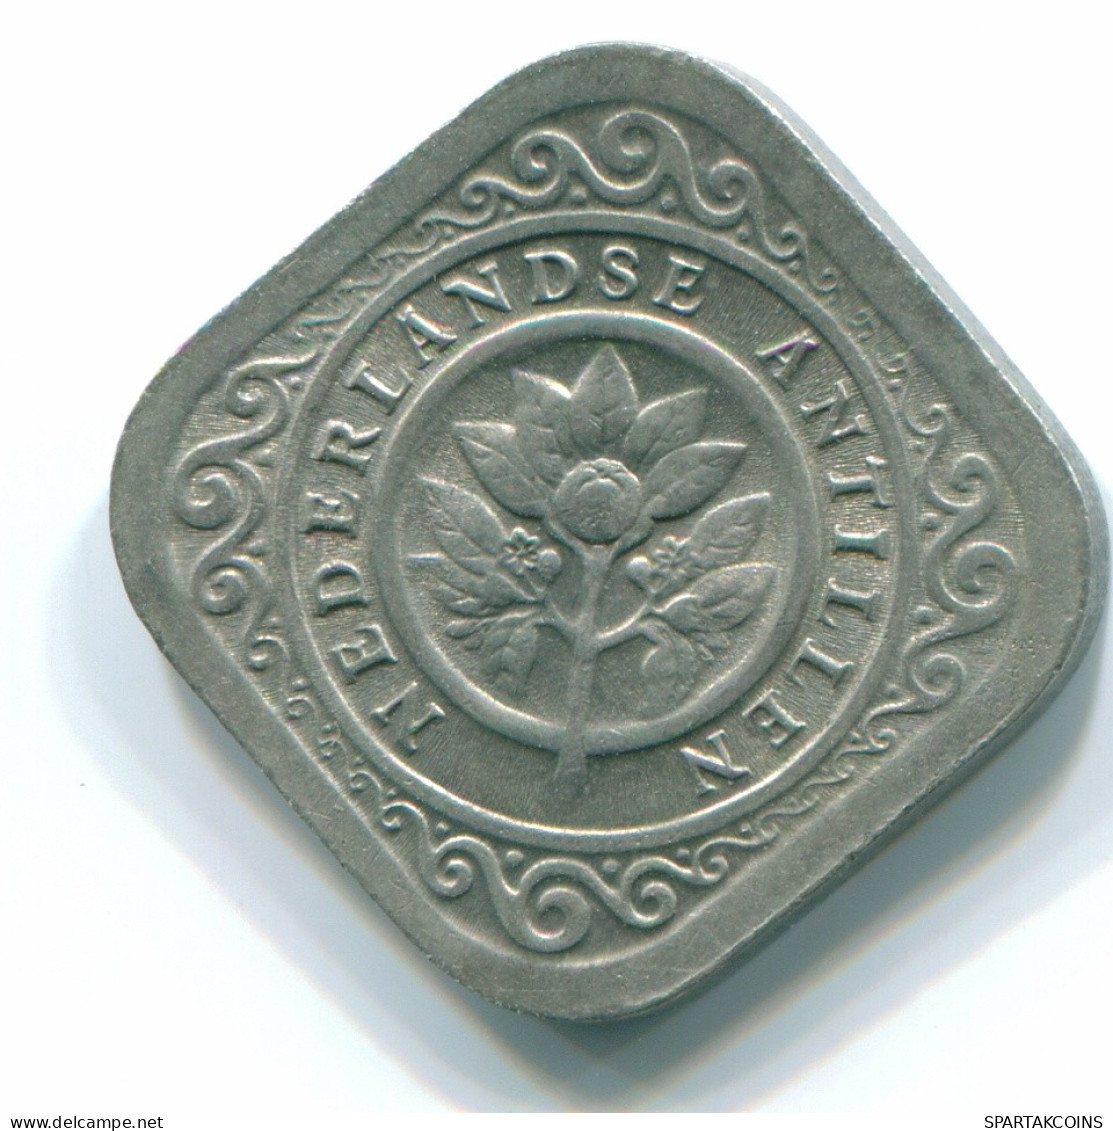 5 CENTS 1965 NIEDERLÄNDISCHE ANTILLEN Nickel Koloniale Münze #S12448.D.A - Niederländische Antillen